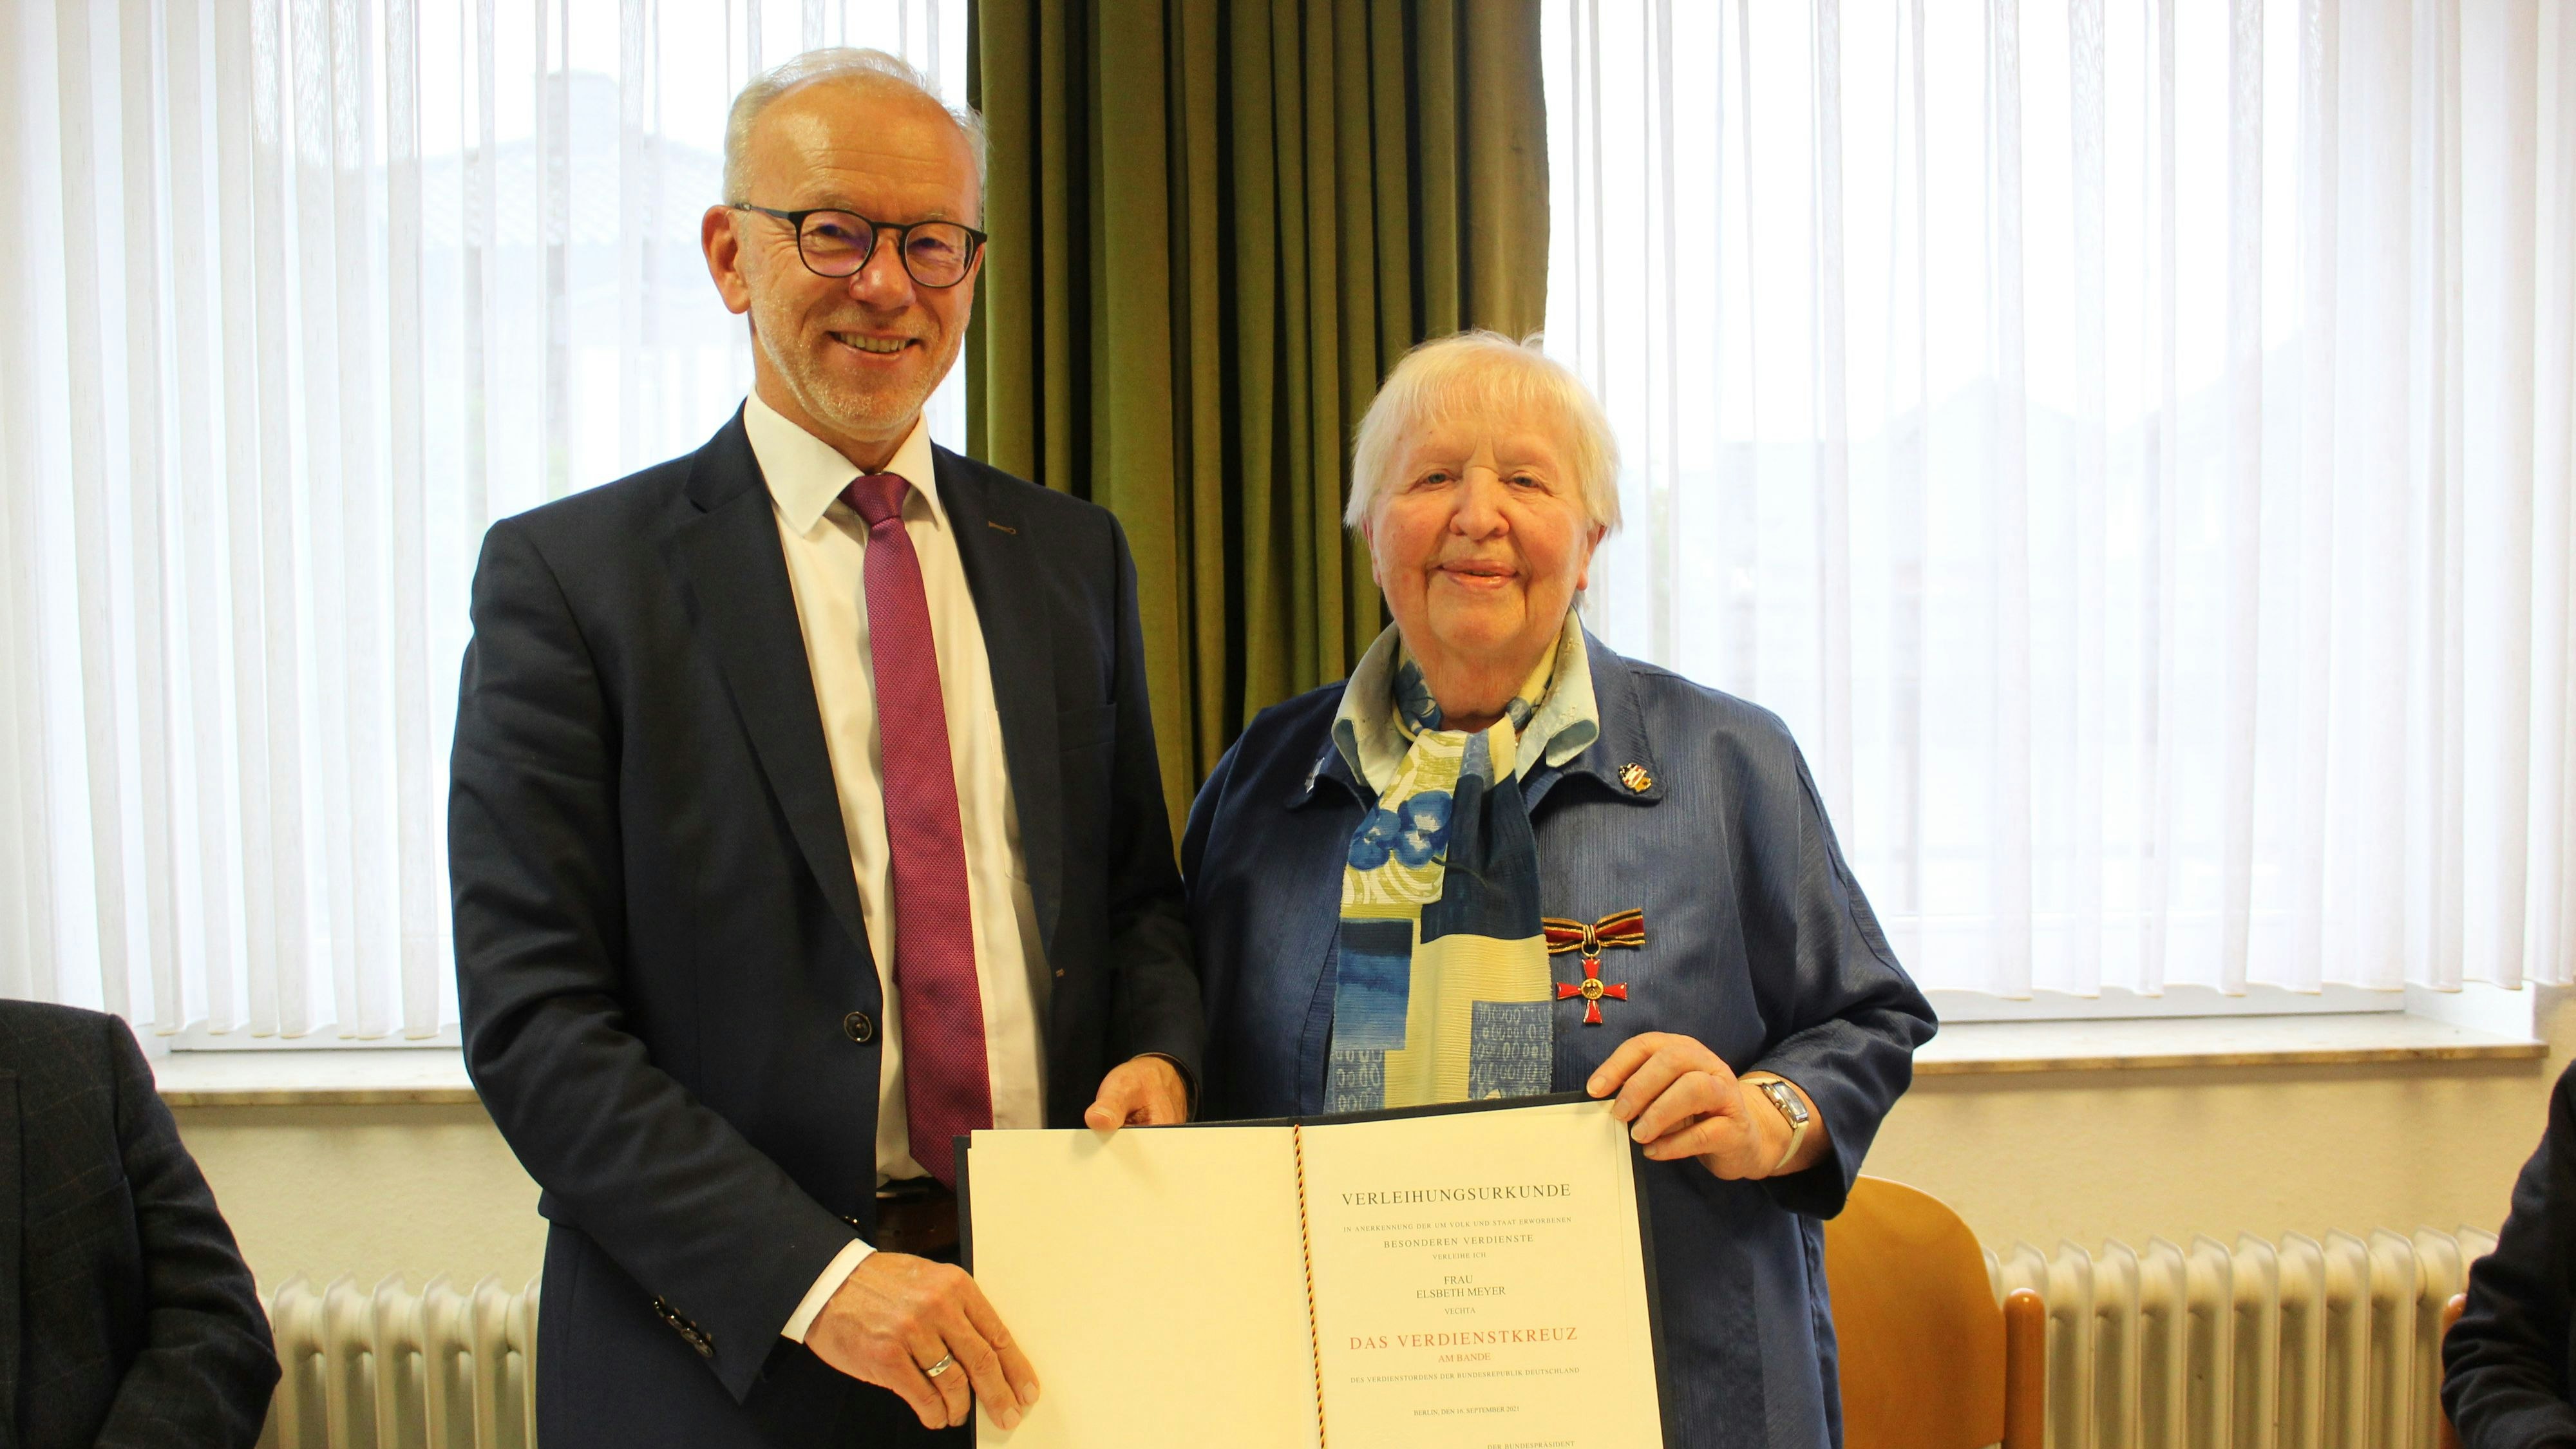 Für Engagement ausgezeichnet: Der ehemalige Landrat Herbert Winkel hat Elsbeth Meyer das Bundesverdienstkreuz verliehen. Foto: Landkreis Vechta/Steinkamp